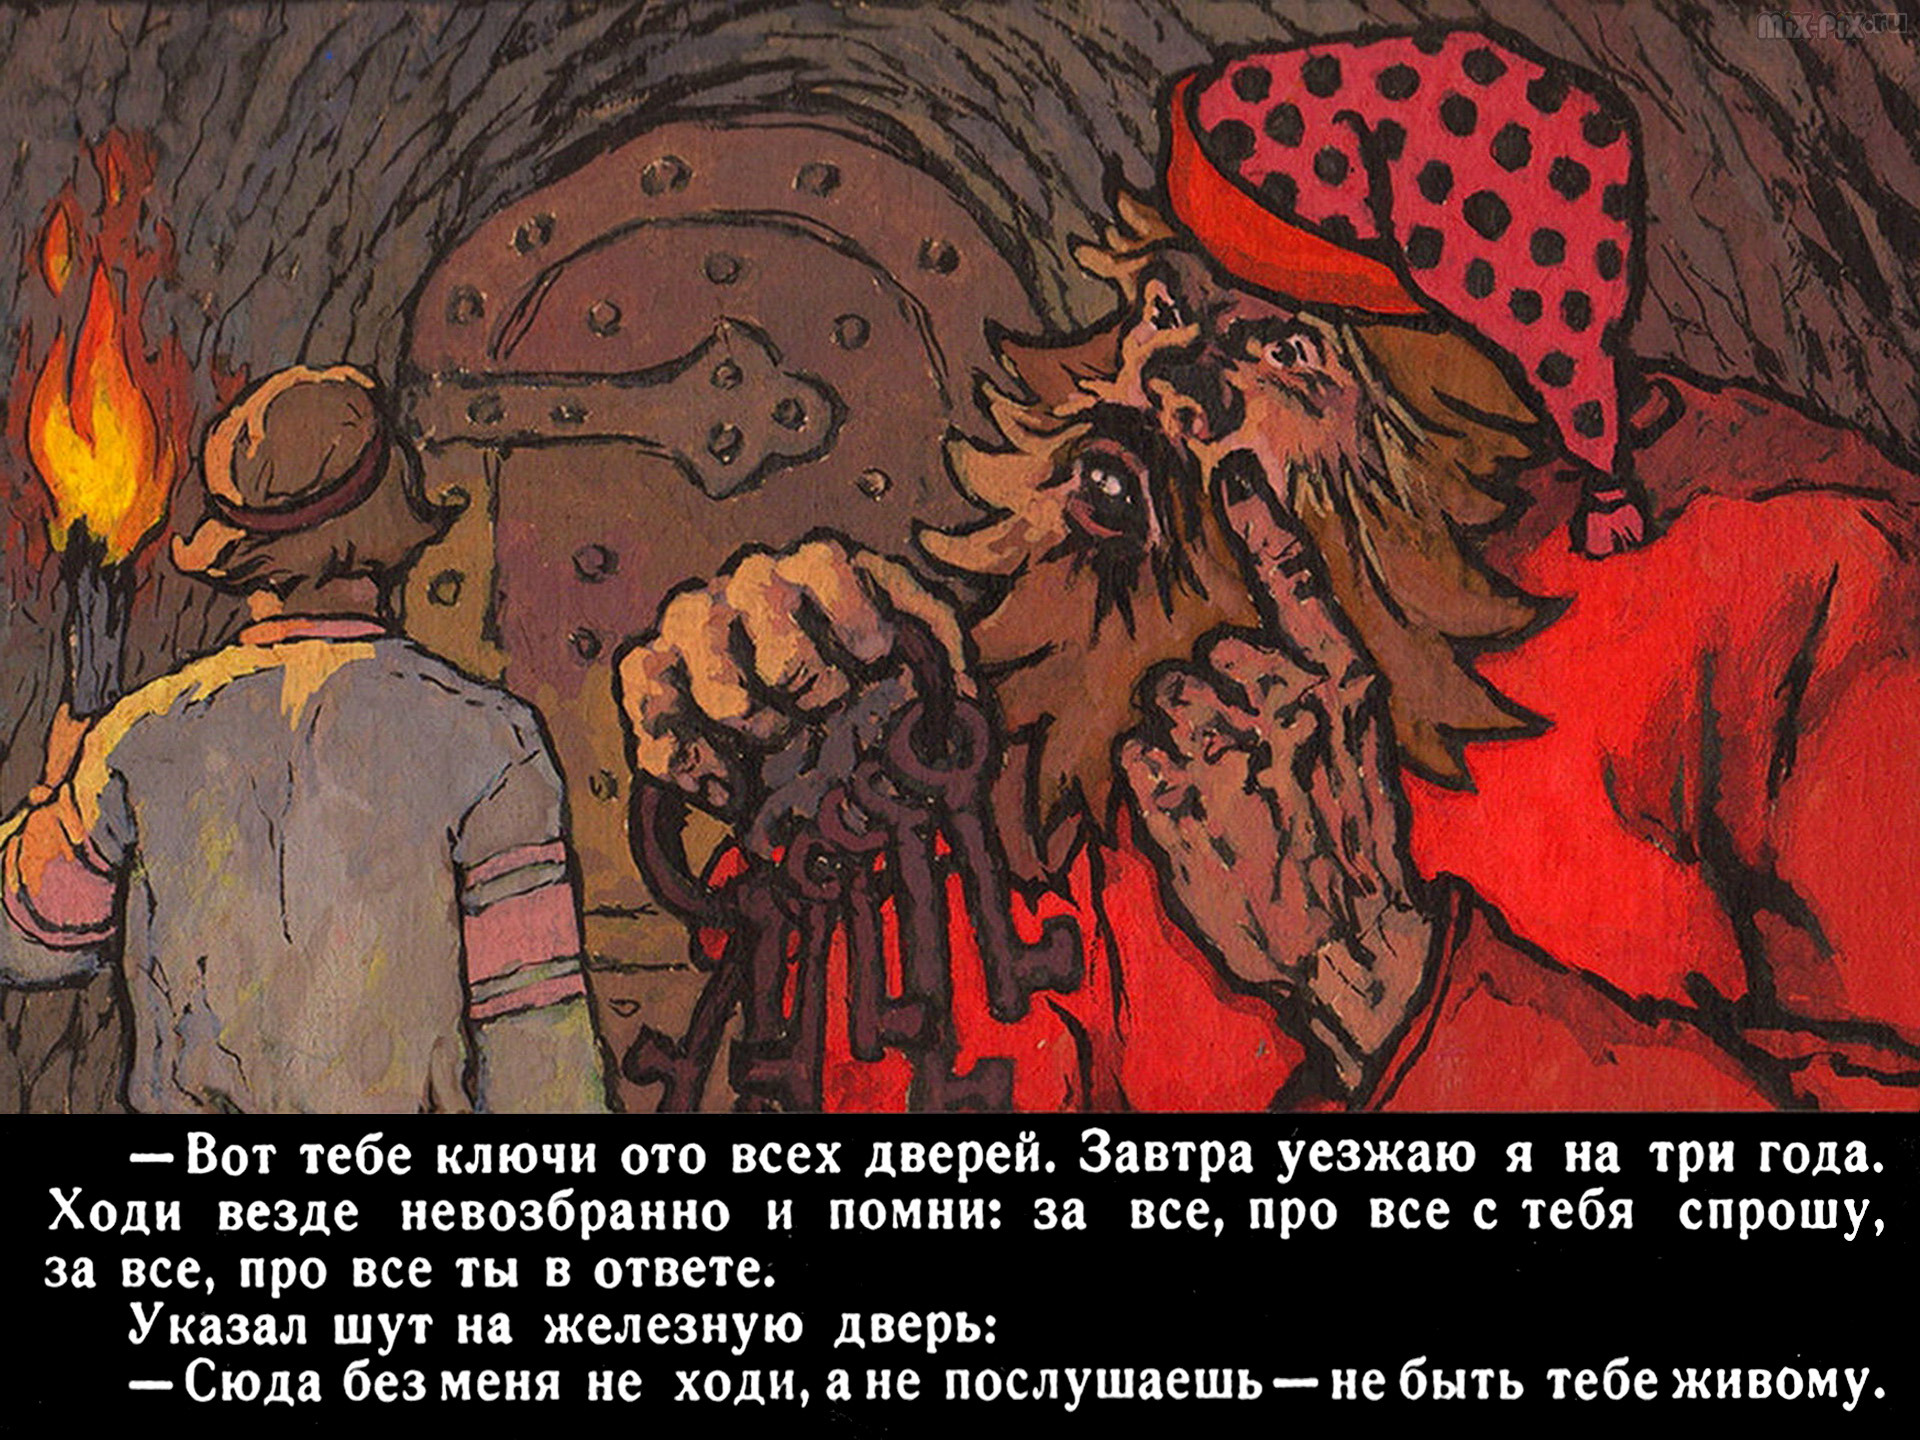 Михаил чулков: книги, русские народные сказки, былины, песни, суеверия.